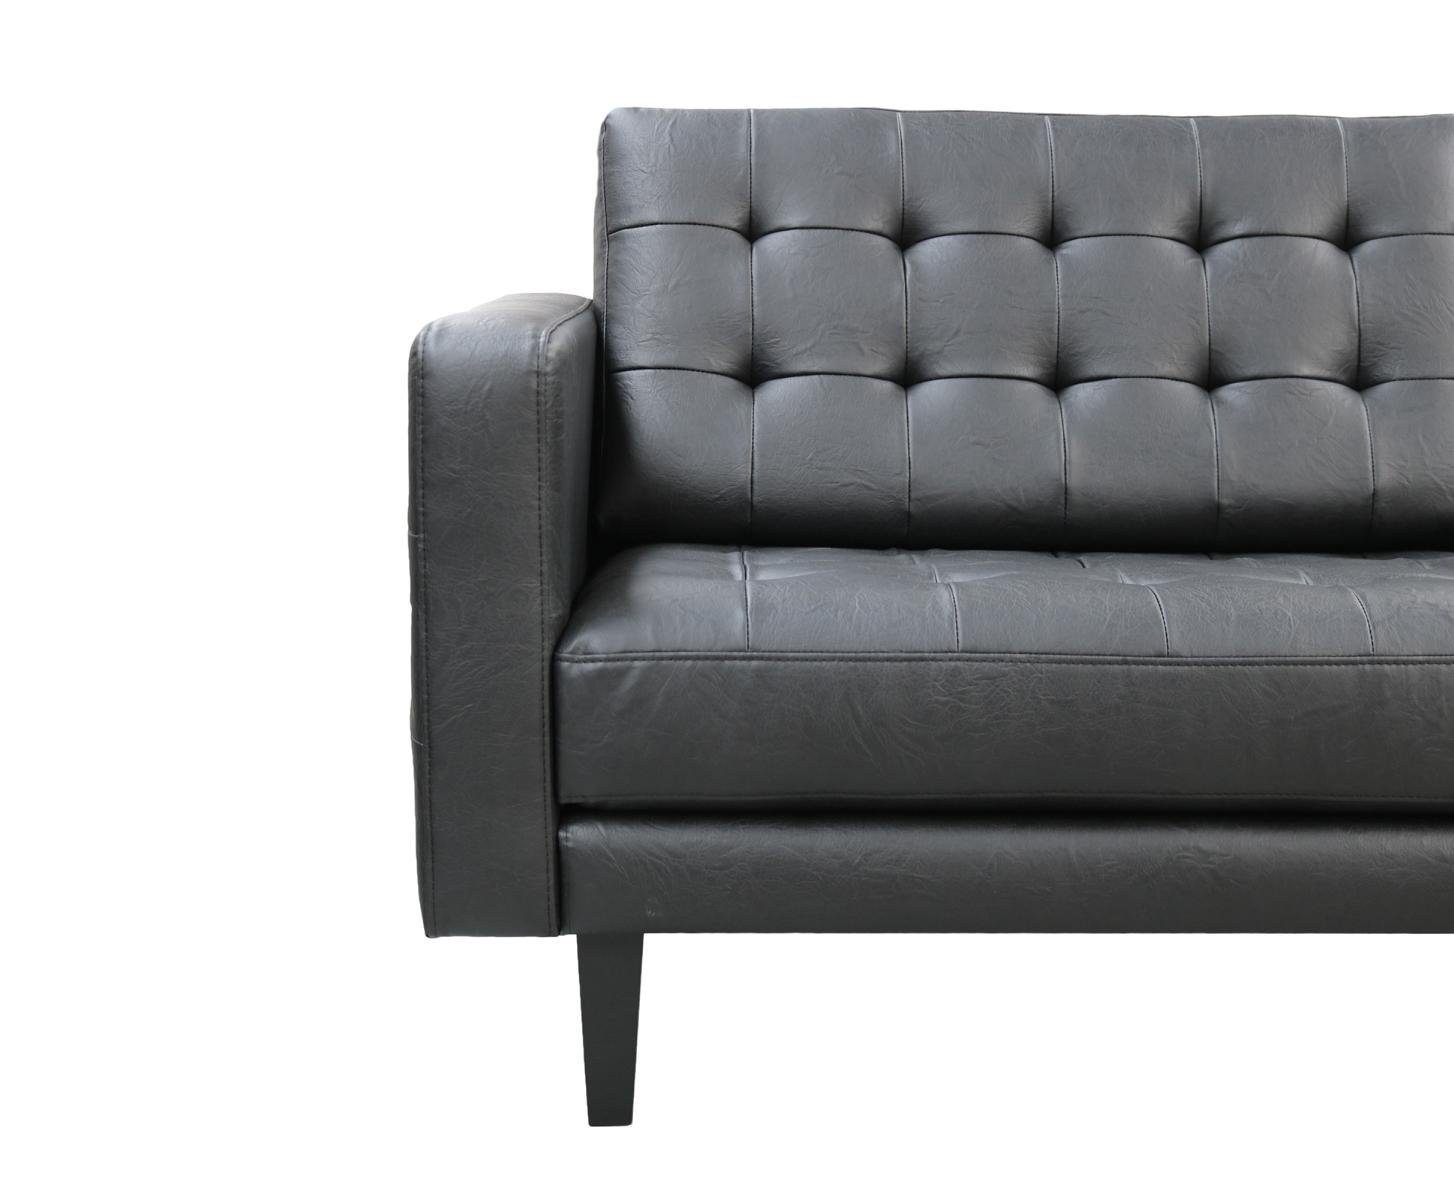 JVmoebel Sofa in Chesterfield Made Couch Polster Polstermöbel Neu, 3+1 Sitzer Europe Schwarze